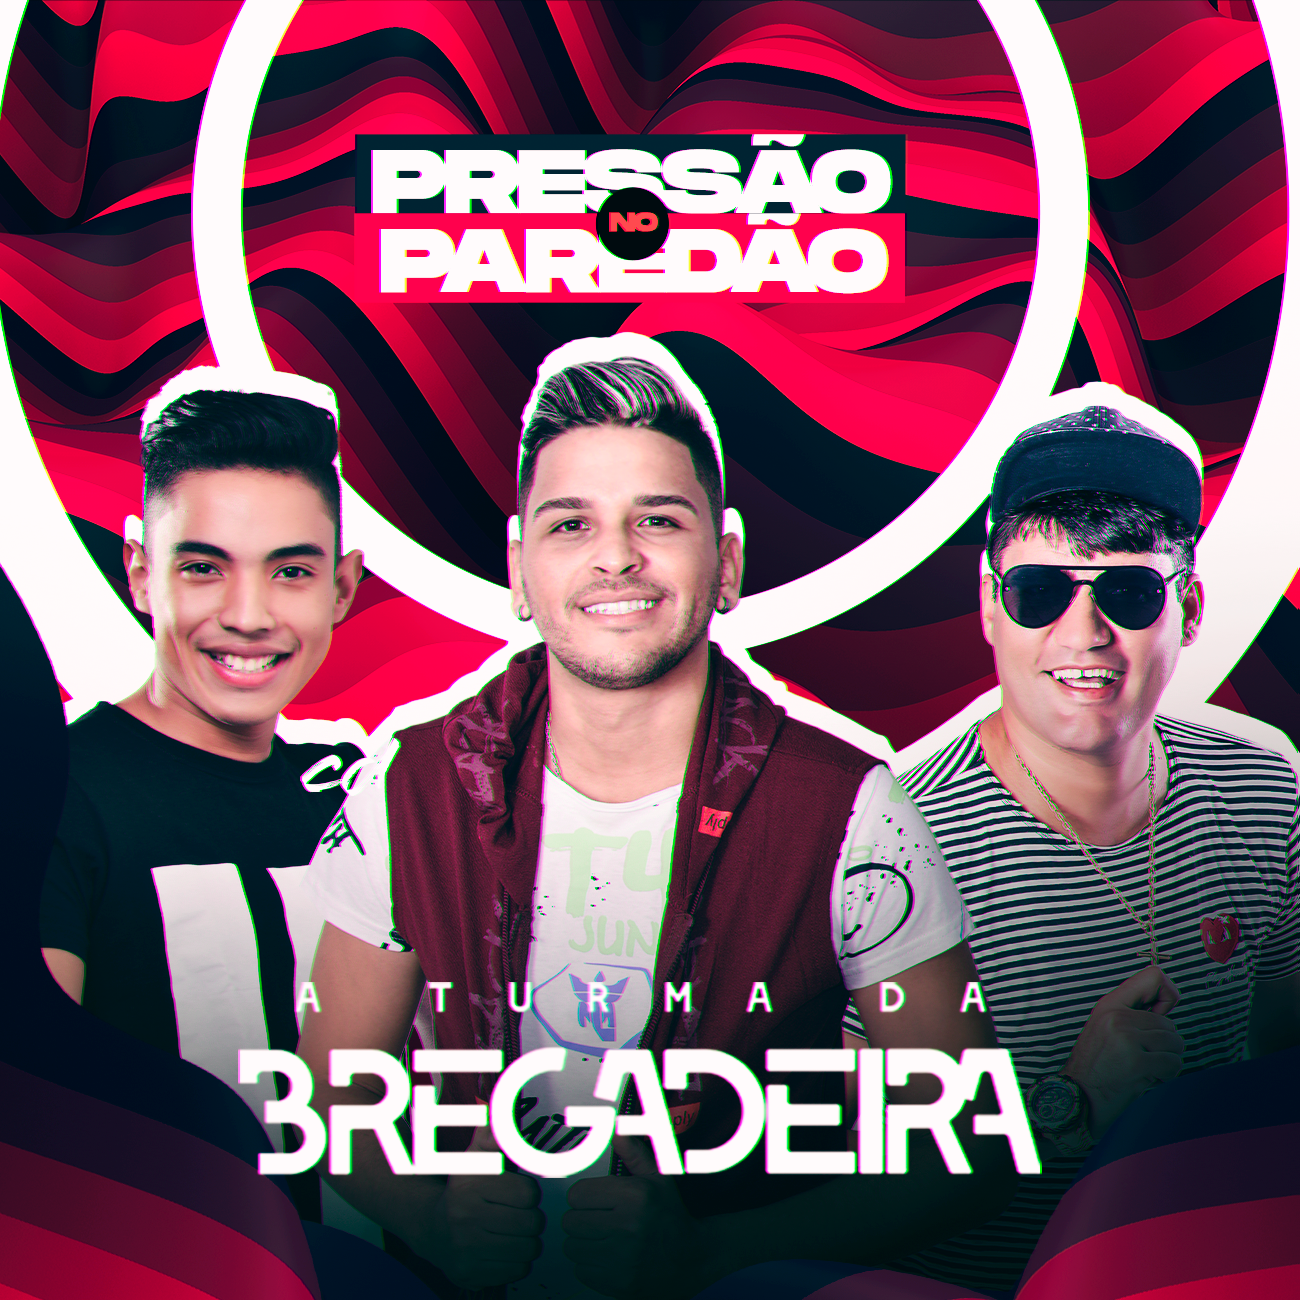 A TURMA DA BREGADEIRA - PRESSO NO PAREDO- CD 2021